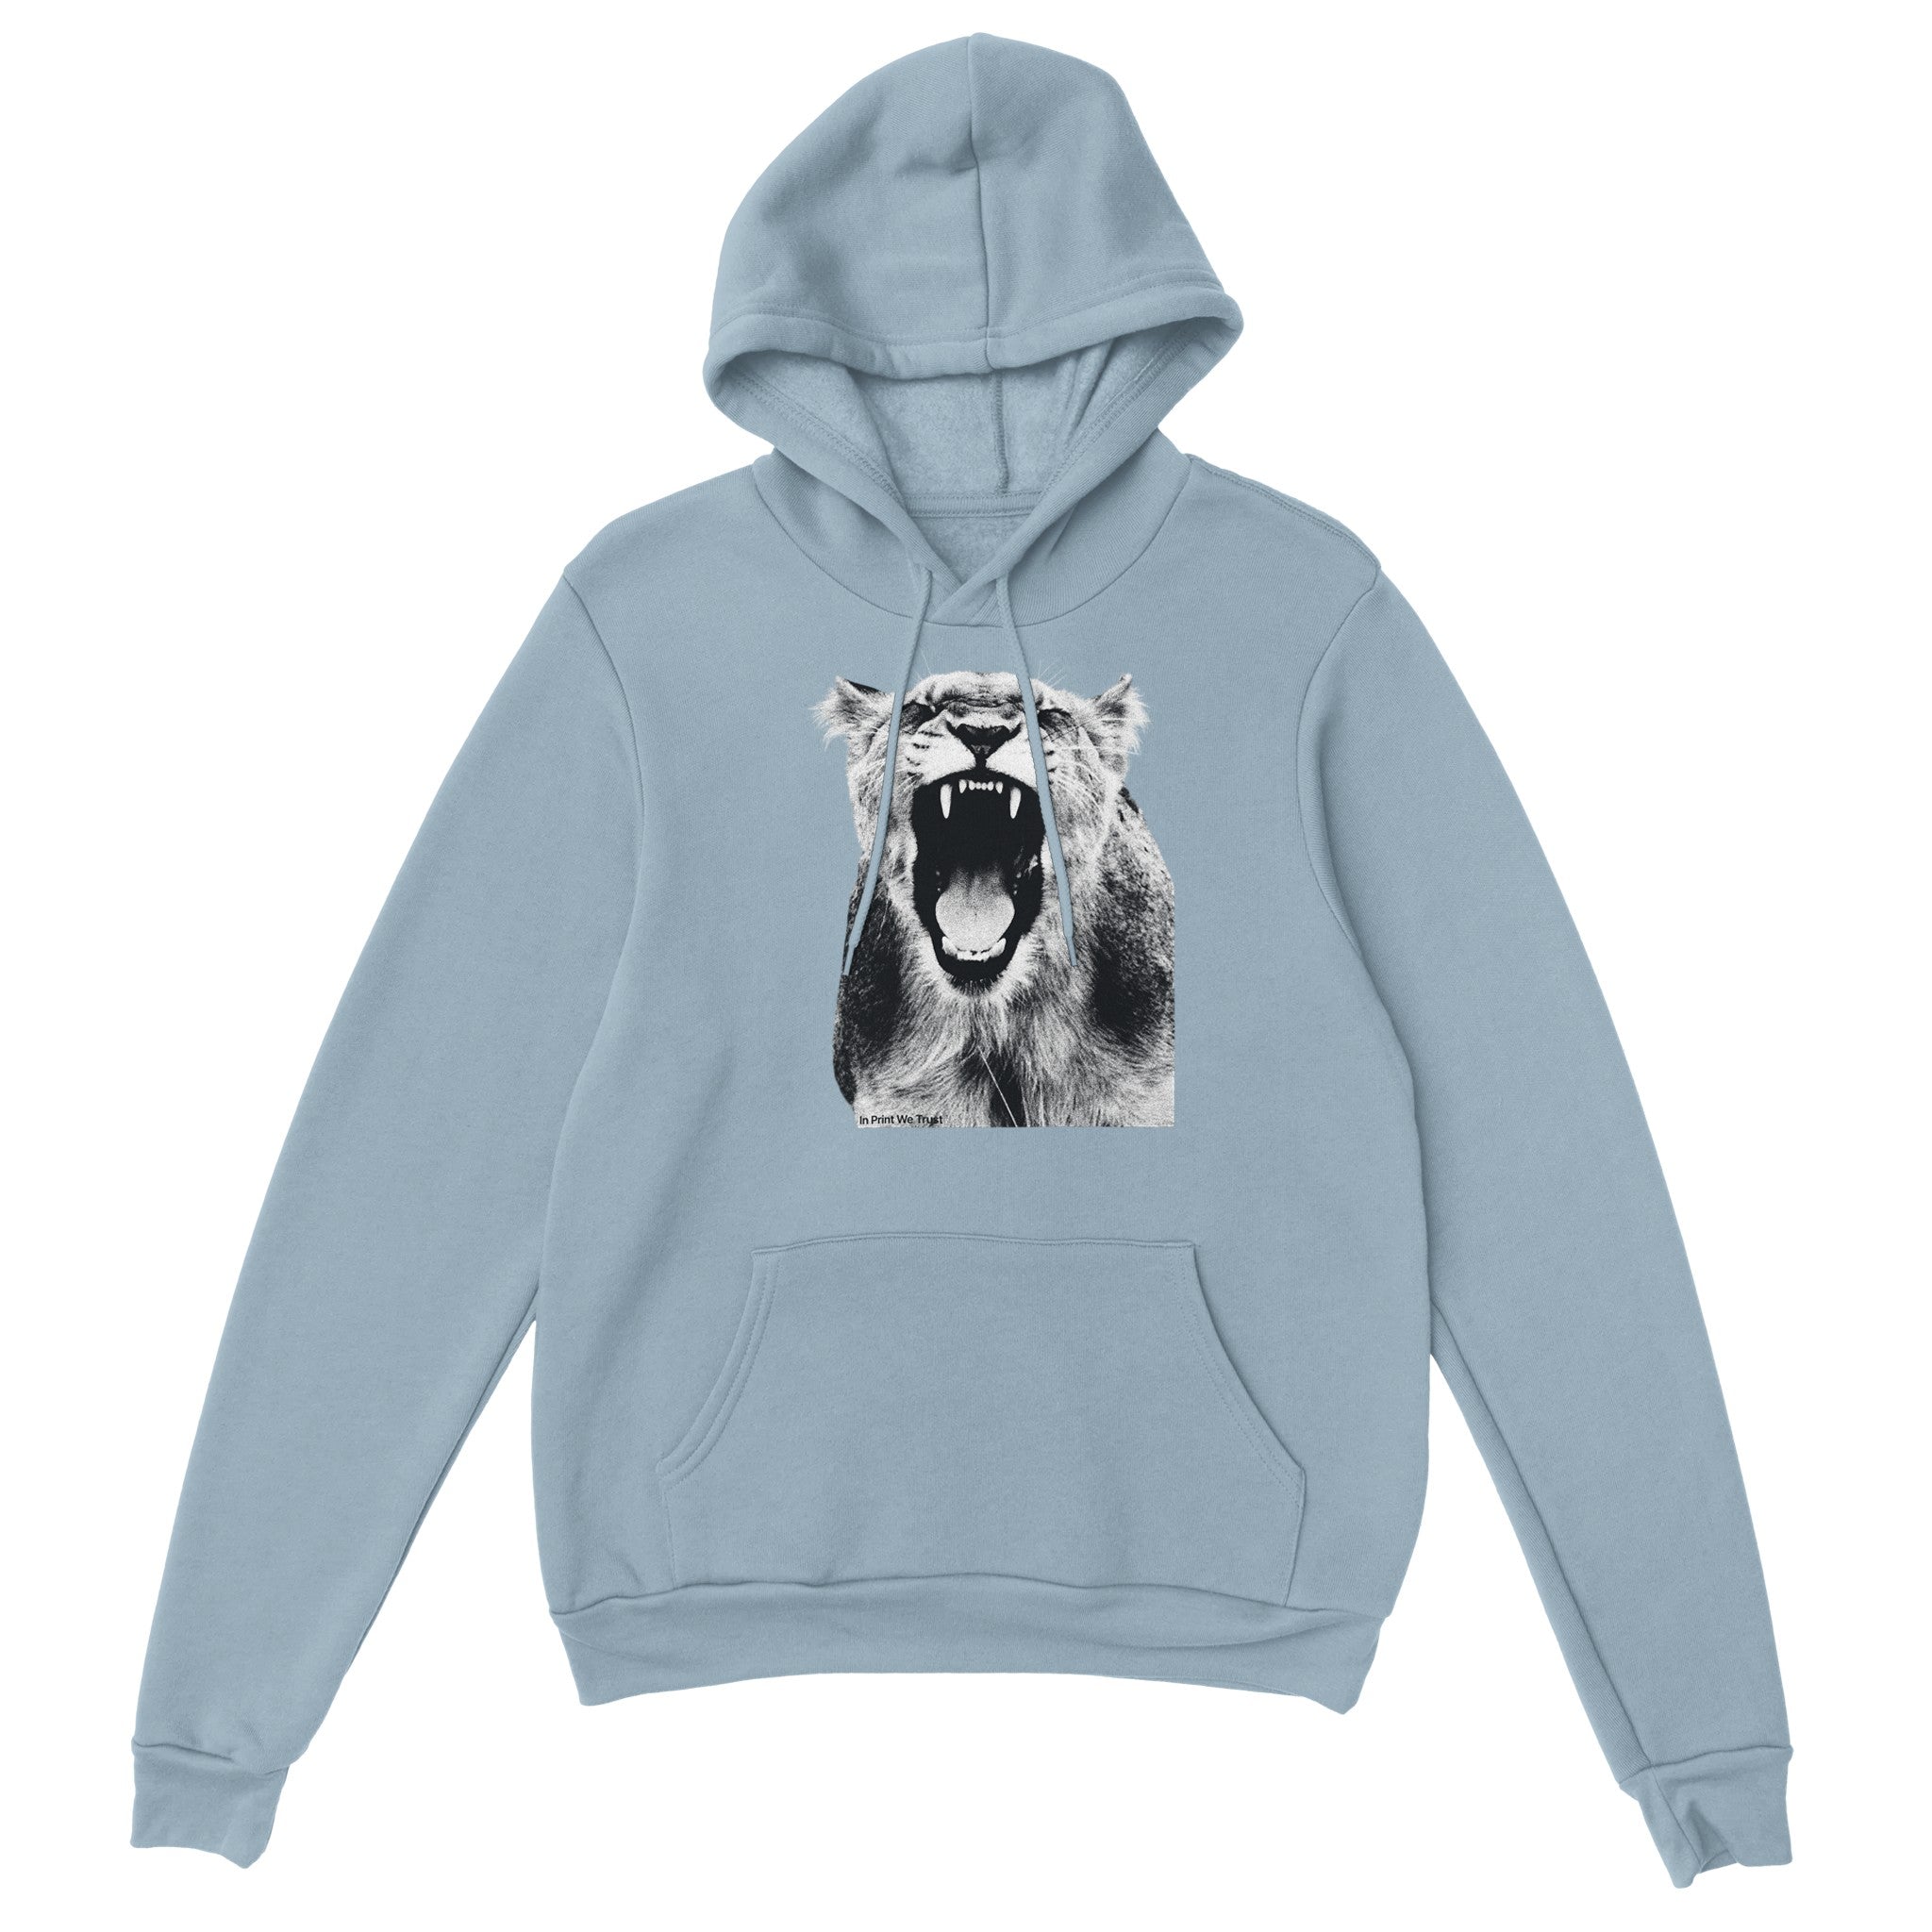 'Roar' hoodie - In Print We Trust